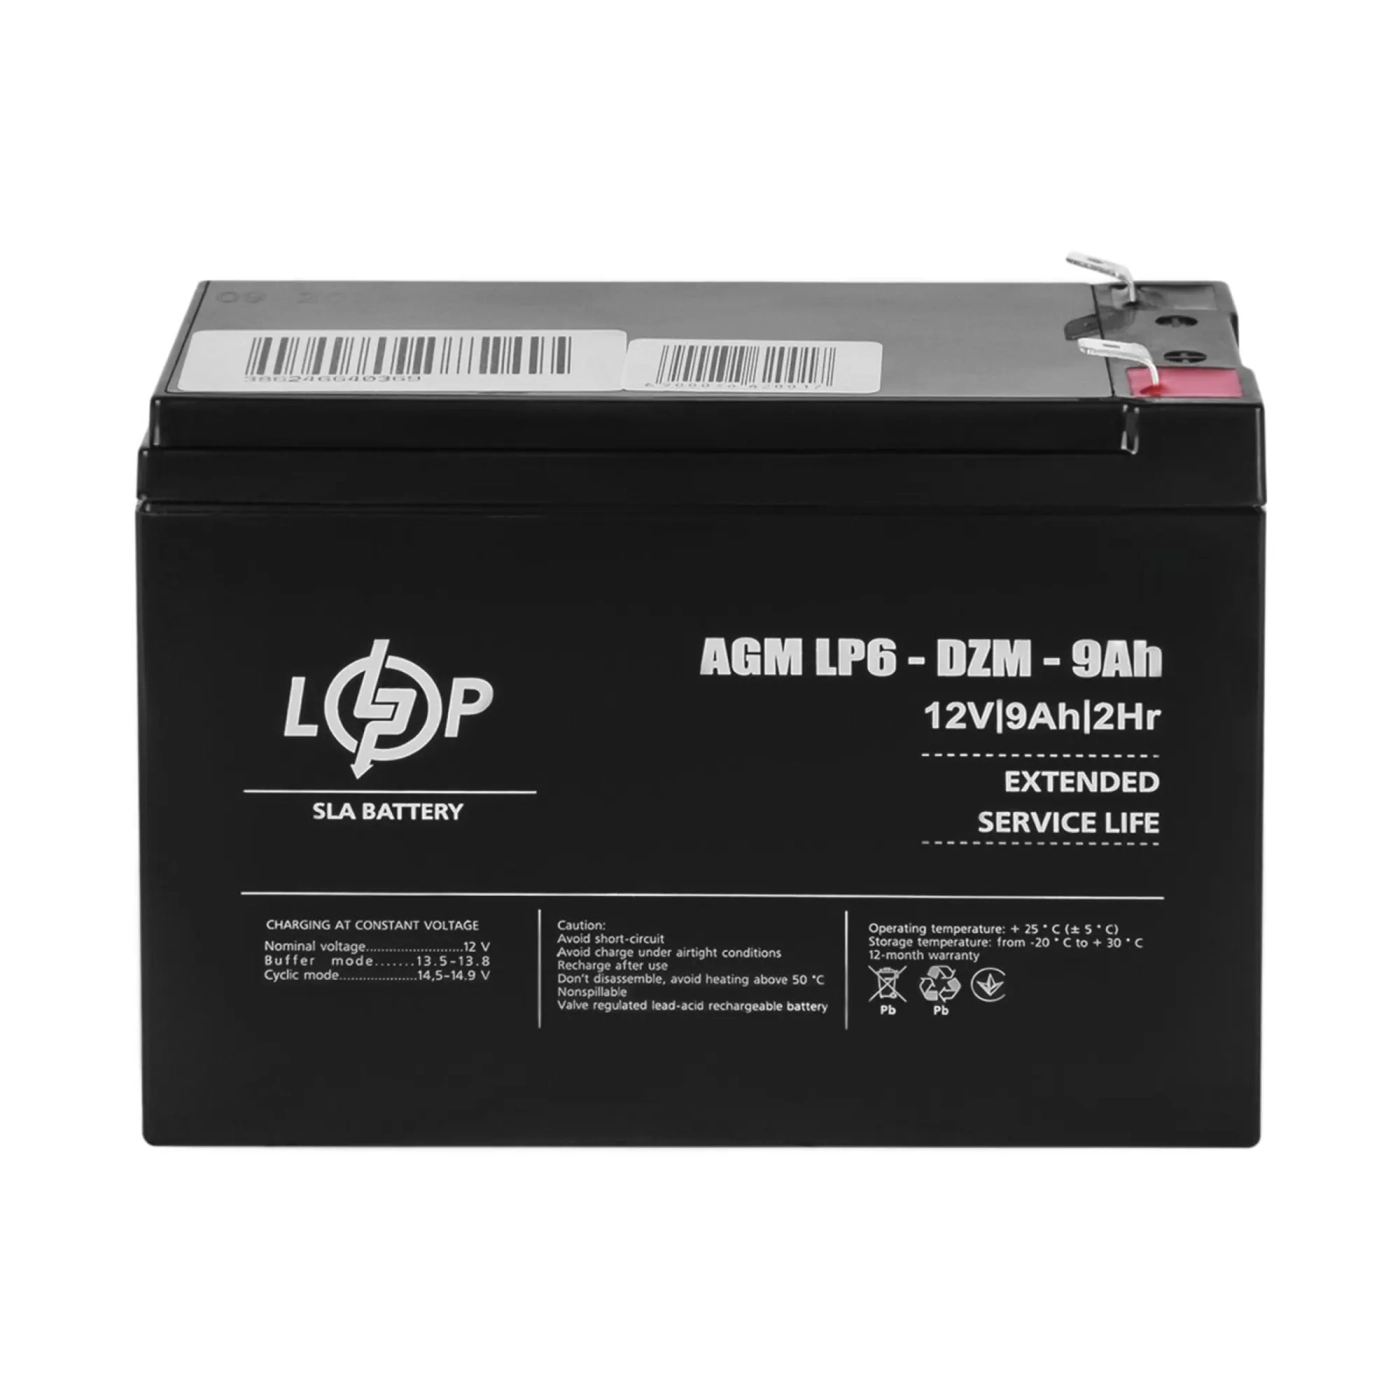 Купить Тяговый свинцово-кислотный аккумулятор LP 6-DZM-9Ah - фото 1